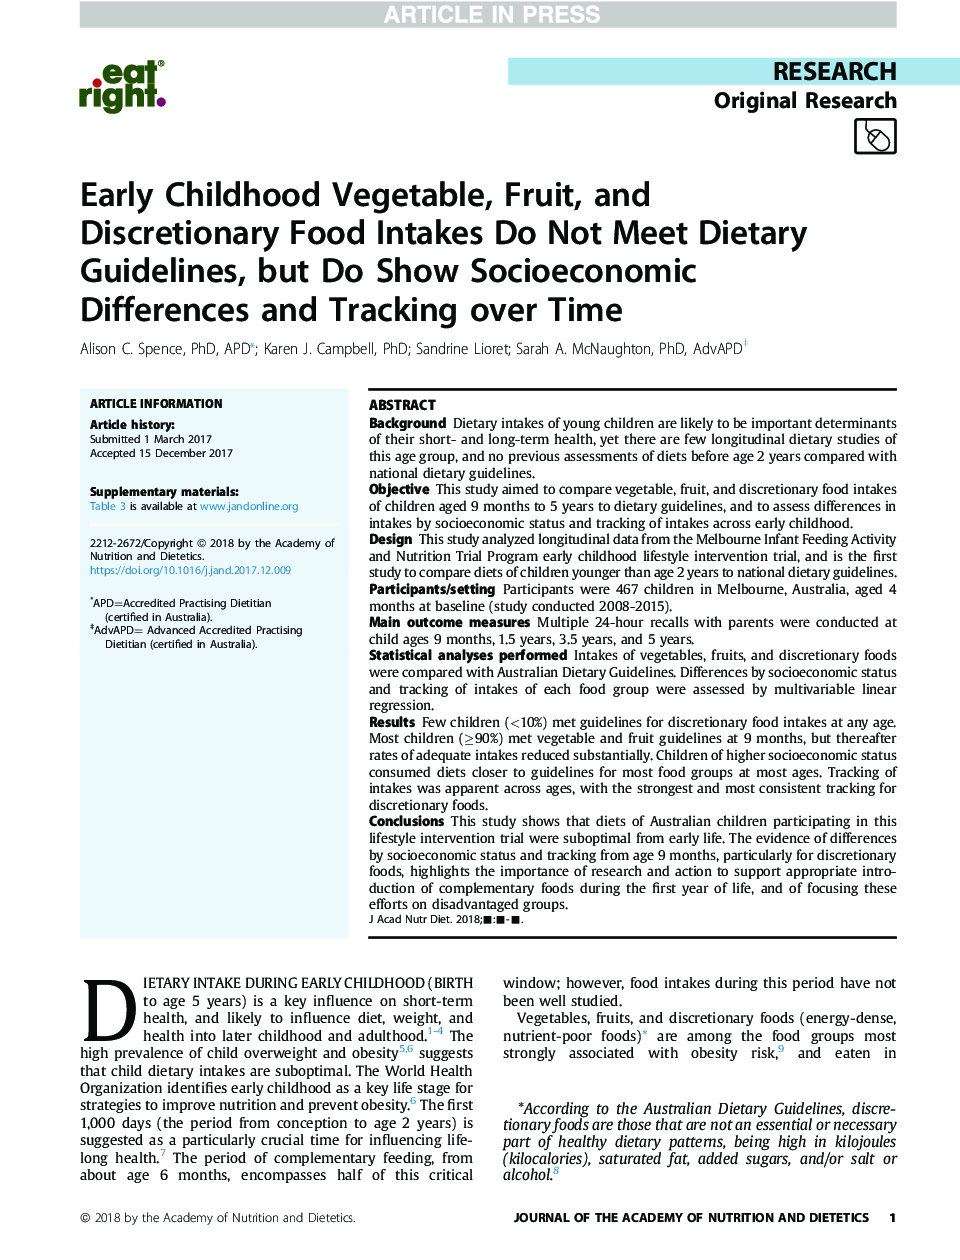 سبزیجات، میوه ها و غذاهای مصرفی در دوران کودکی دستورالعمل های غذایی را رعایت نمی کنند، اما نشان می دهد تفاوت های اجتماعی و اقتصادی را در طول زمان نشان می دهد